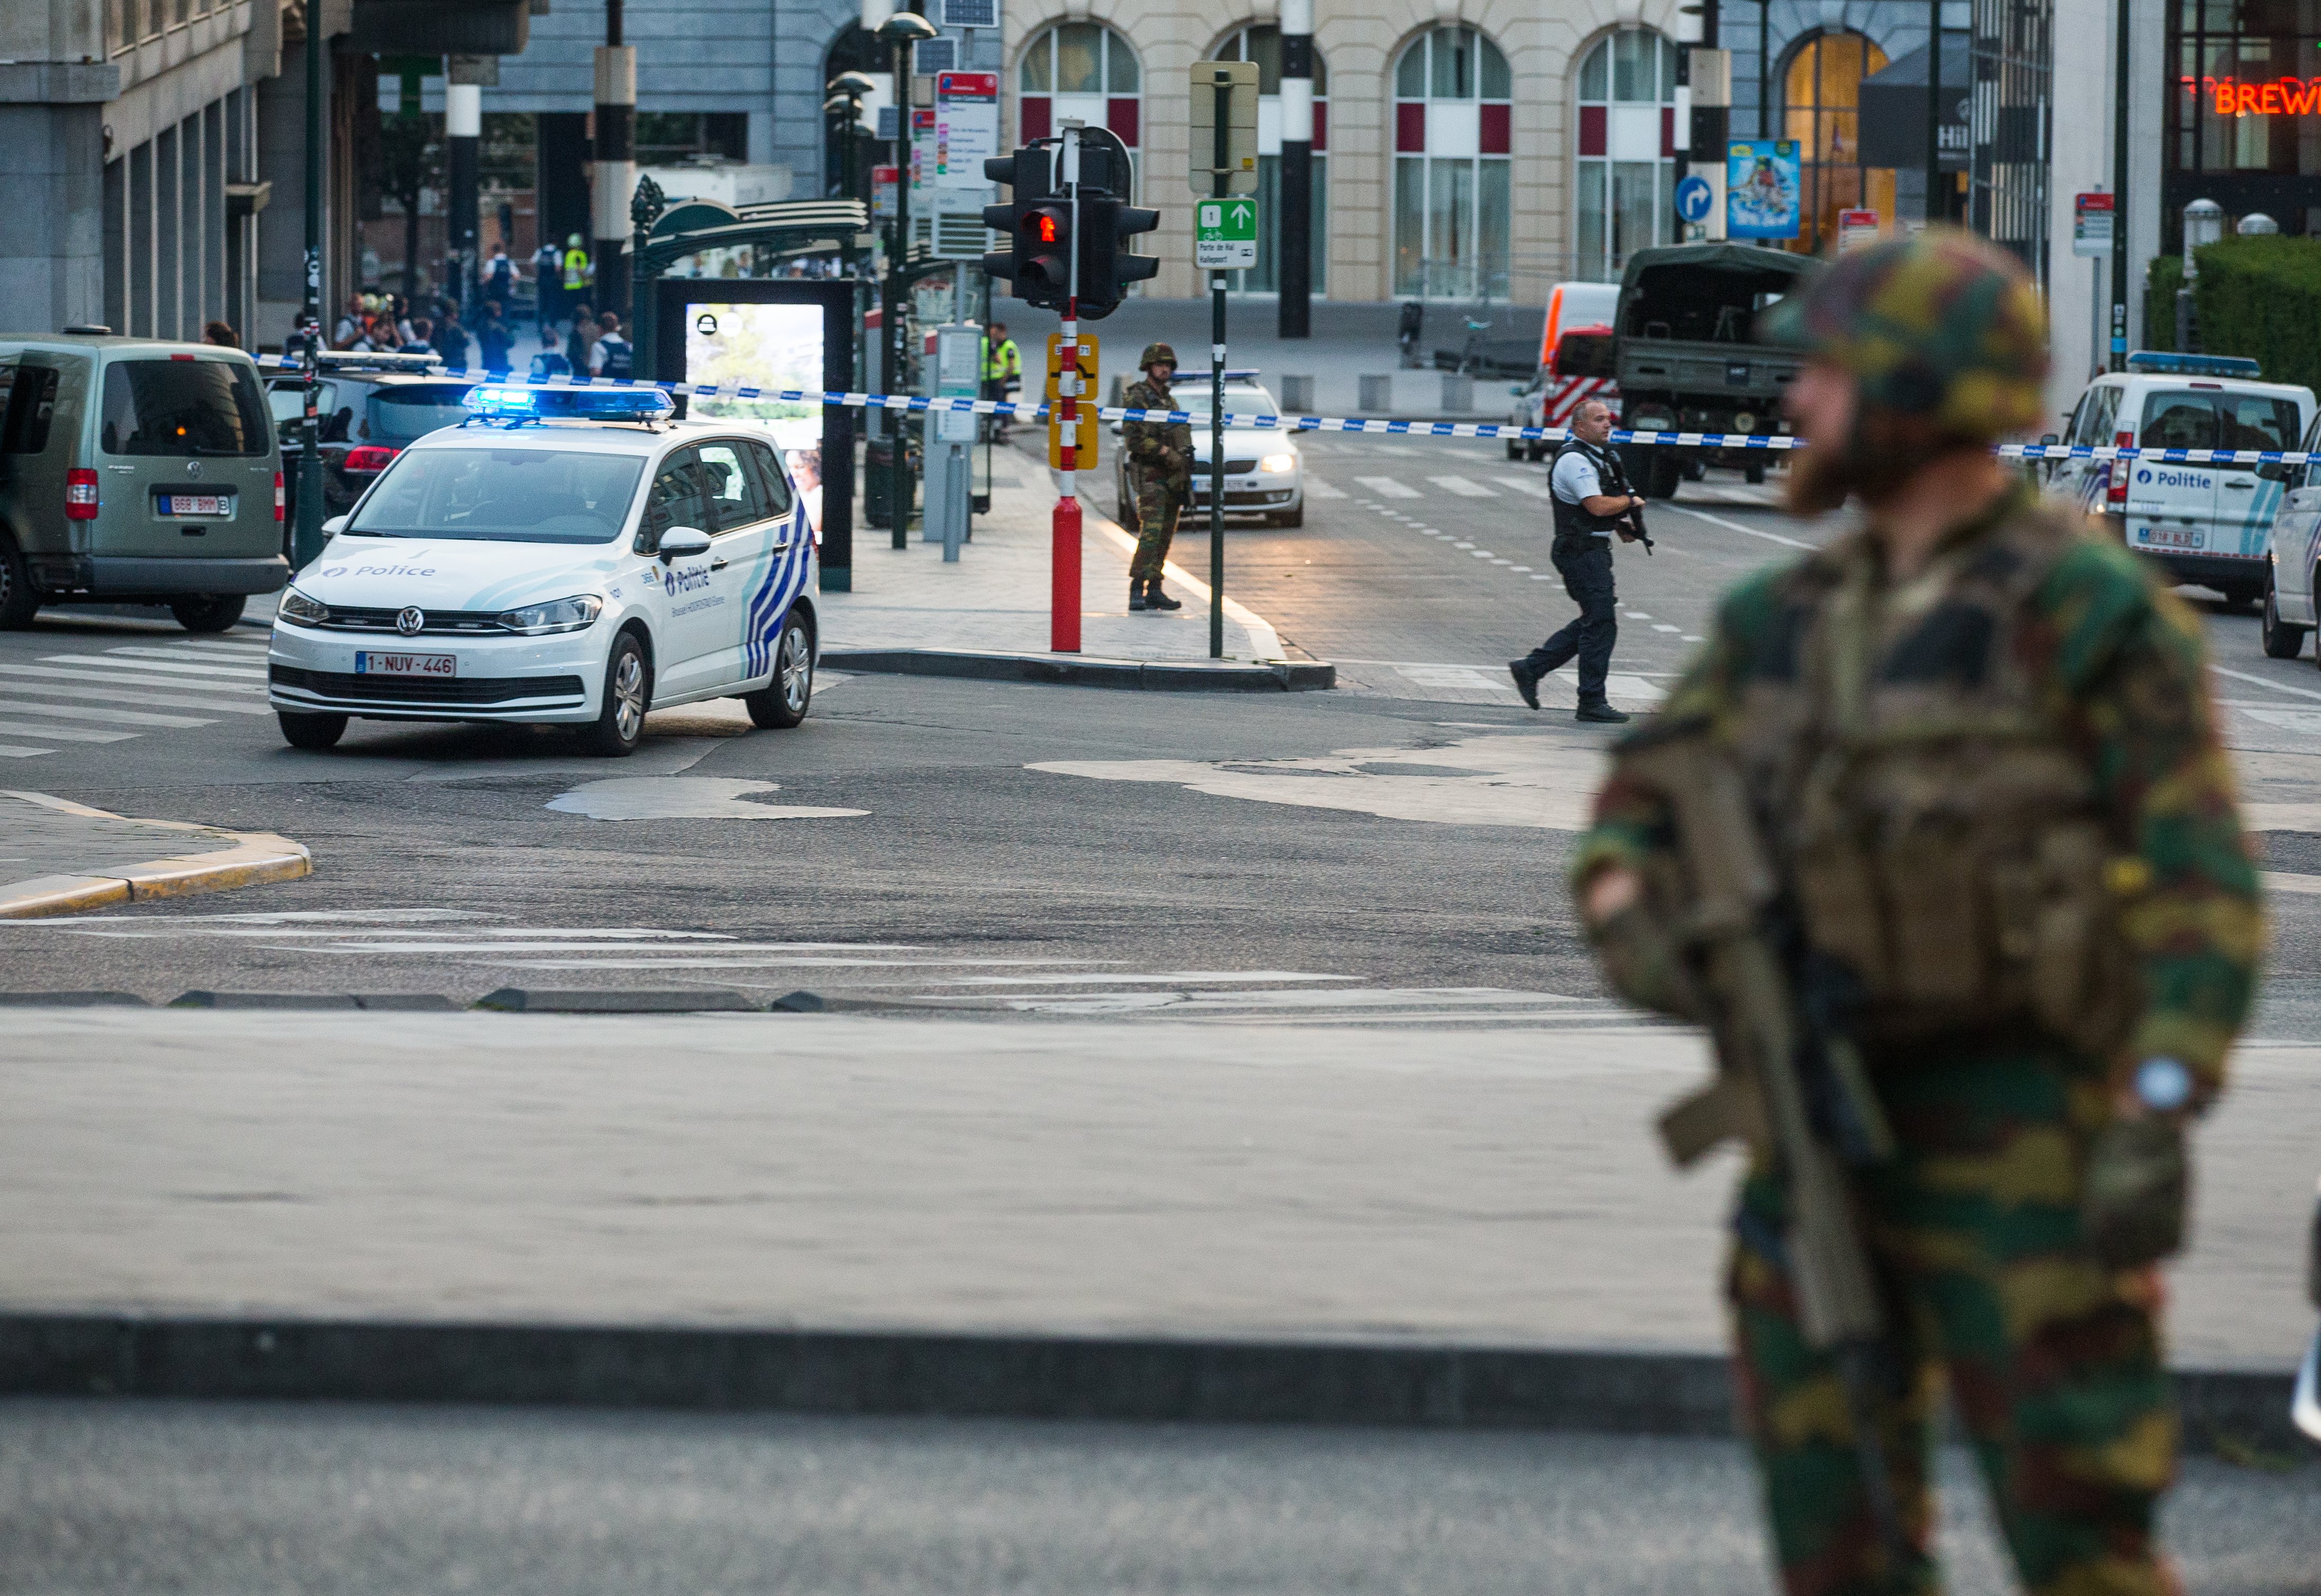 Силите за сигурност в белгийската столица оградиха централната гара и площад "Гран Плас". Те бяха евакуирани след предполагаем опит за атентат на гарата.